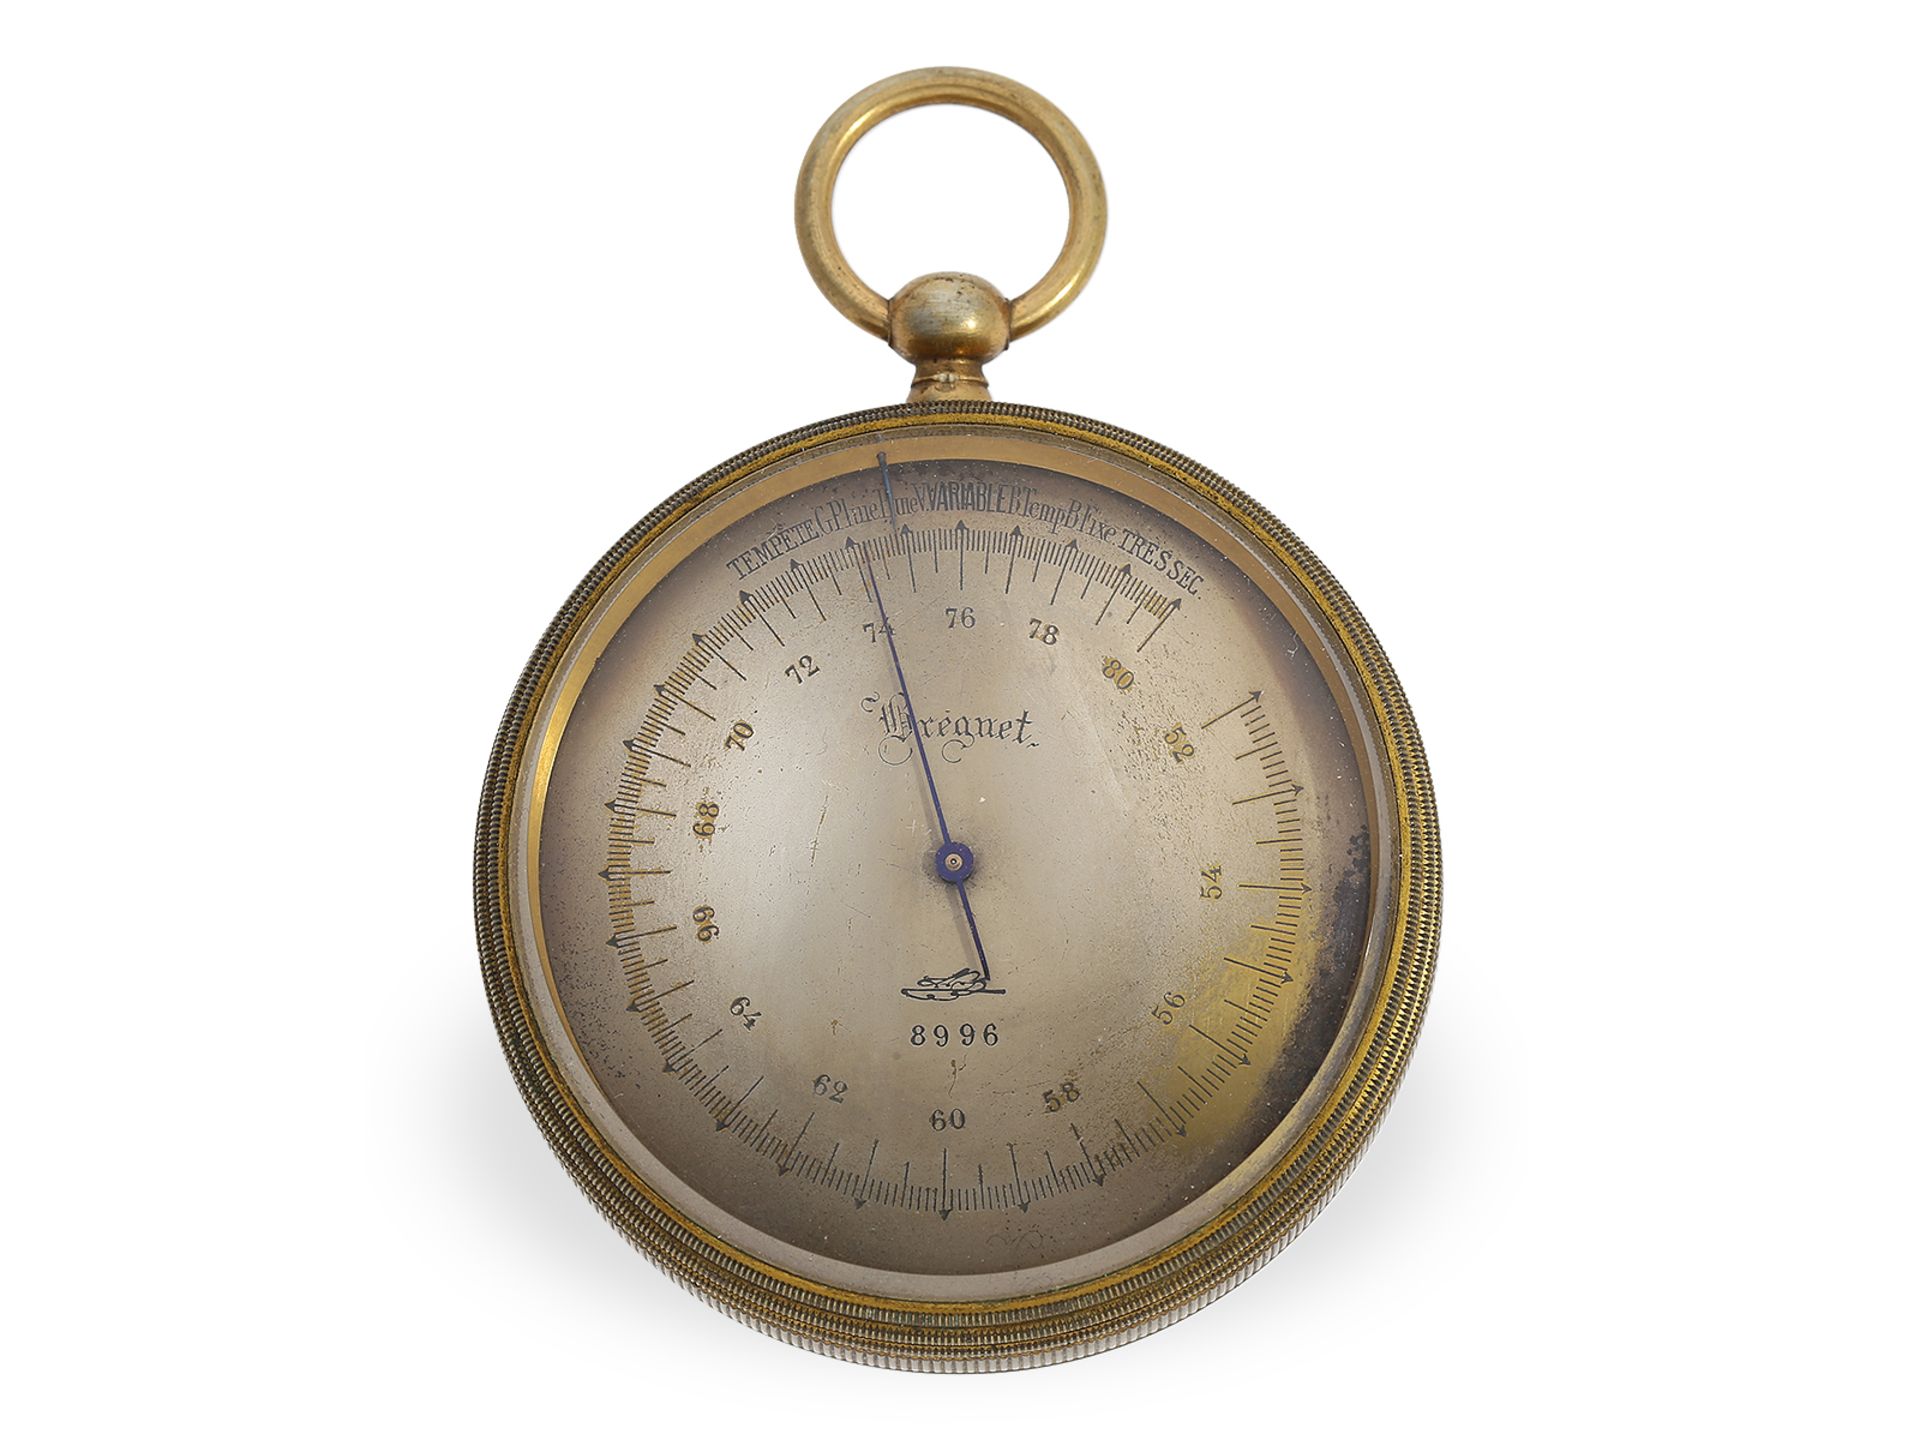 Rare pocket barometer with original box, Breguet No.8996, ca. 1850